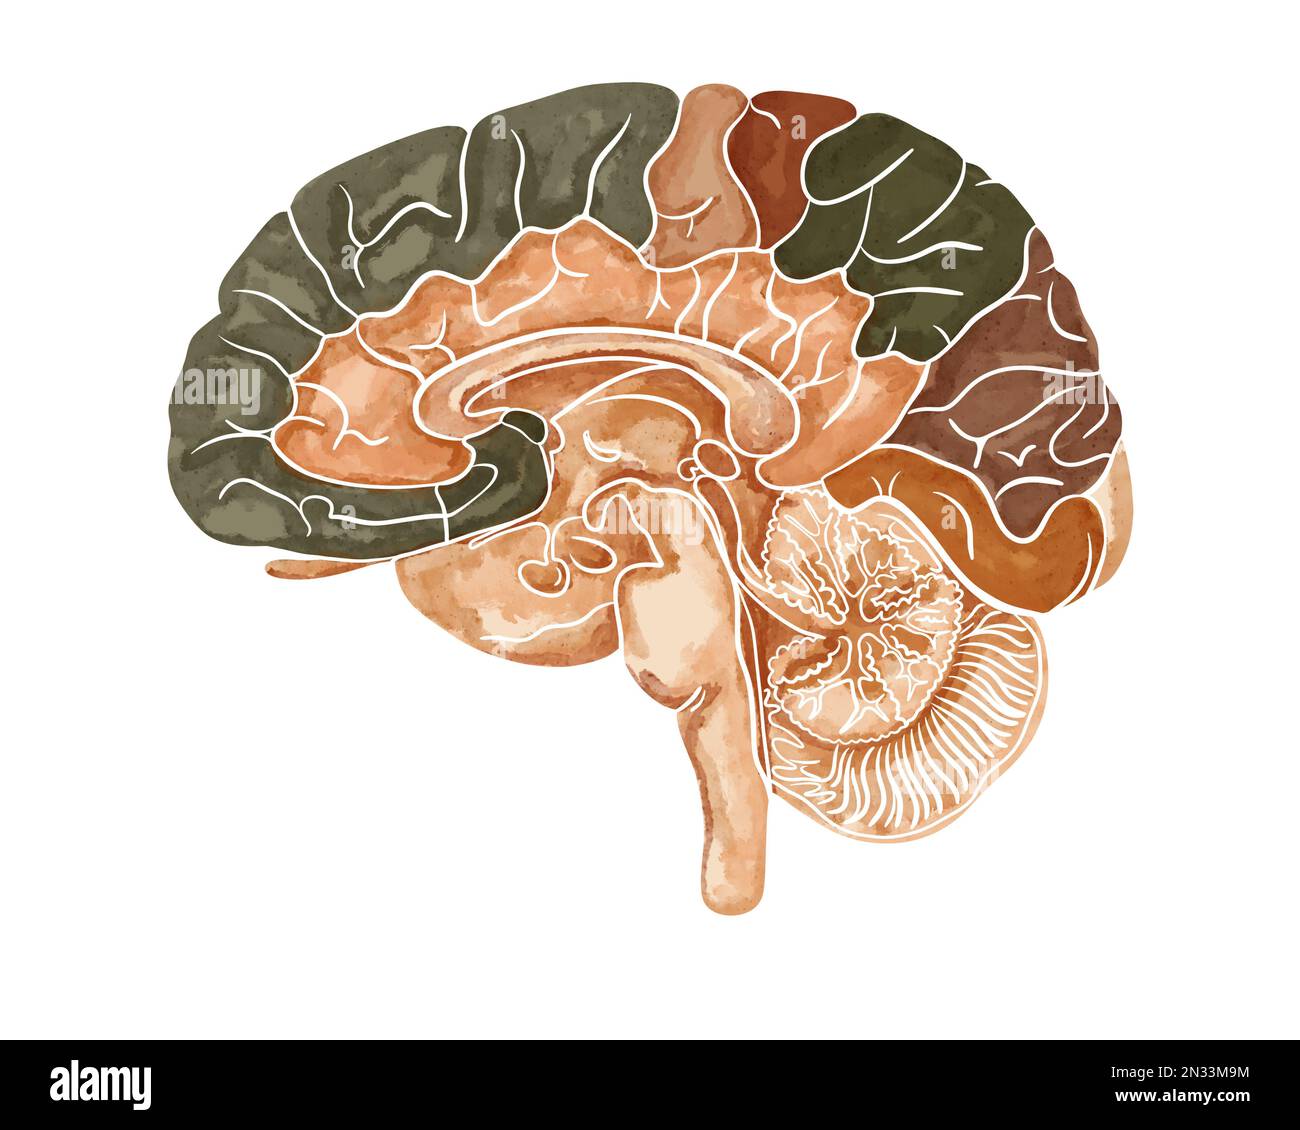 Die Struktur des menschlichen Gehirns. Sagittaler Schnitt. Medizinische Aquarell-Anatomie-Darstellung isoliert auf weißem Hintergrund Stockfoto